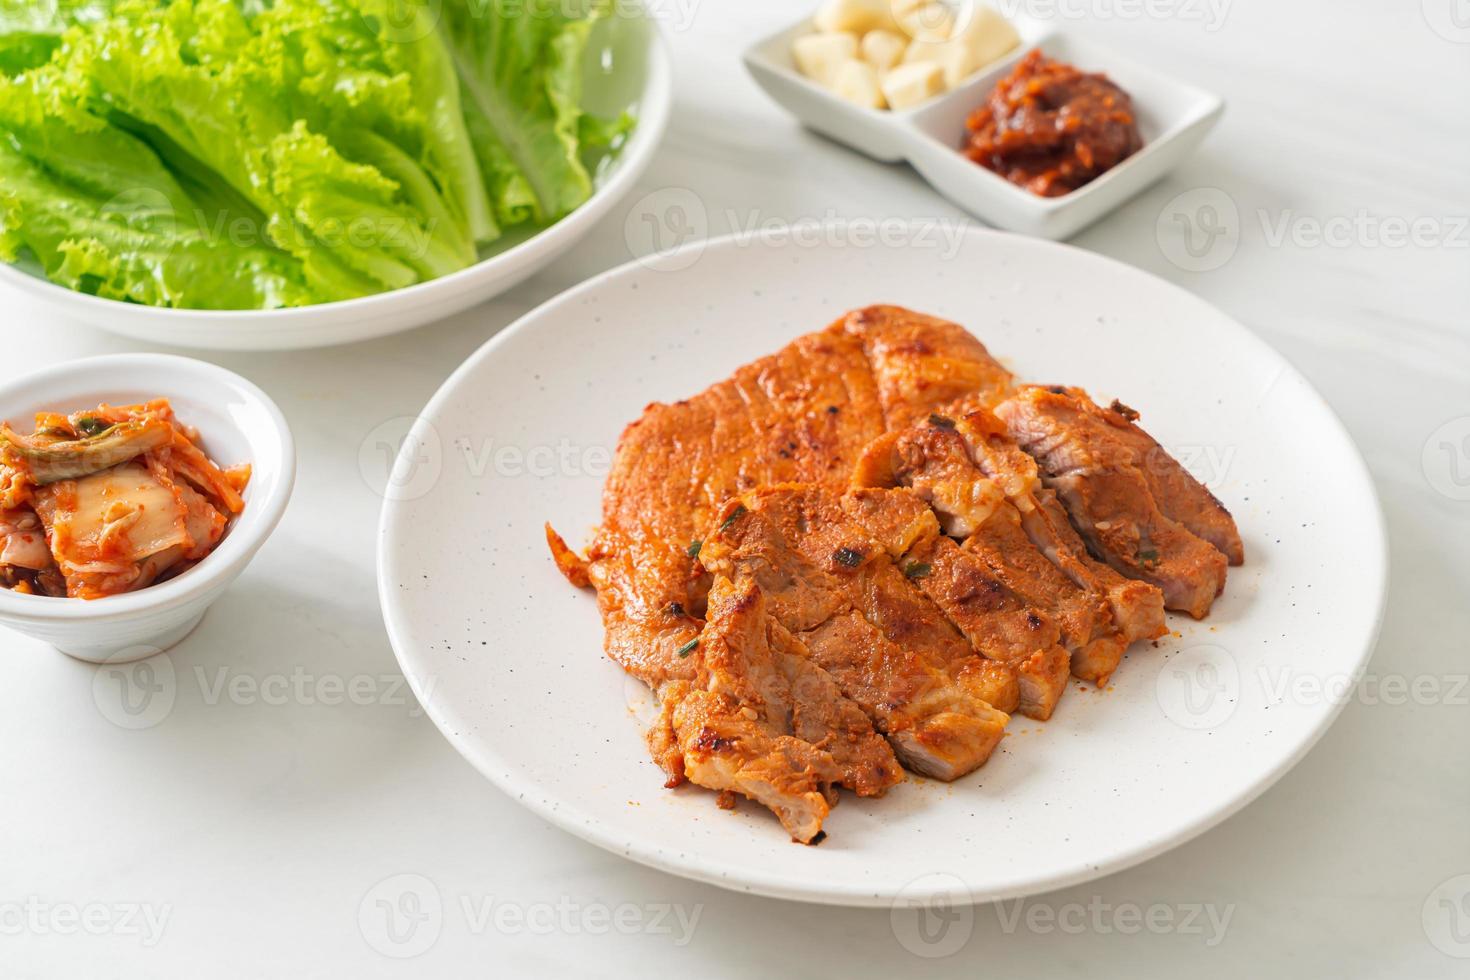 cerdo asado en salsa kochujang marinado al estilo coreano con verduras y kimchi foto